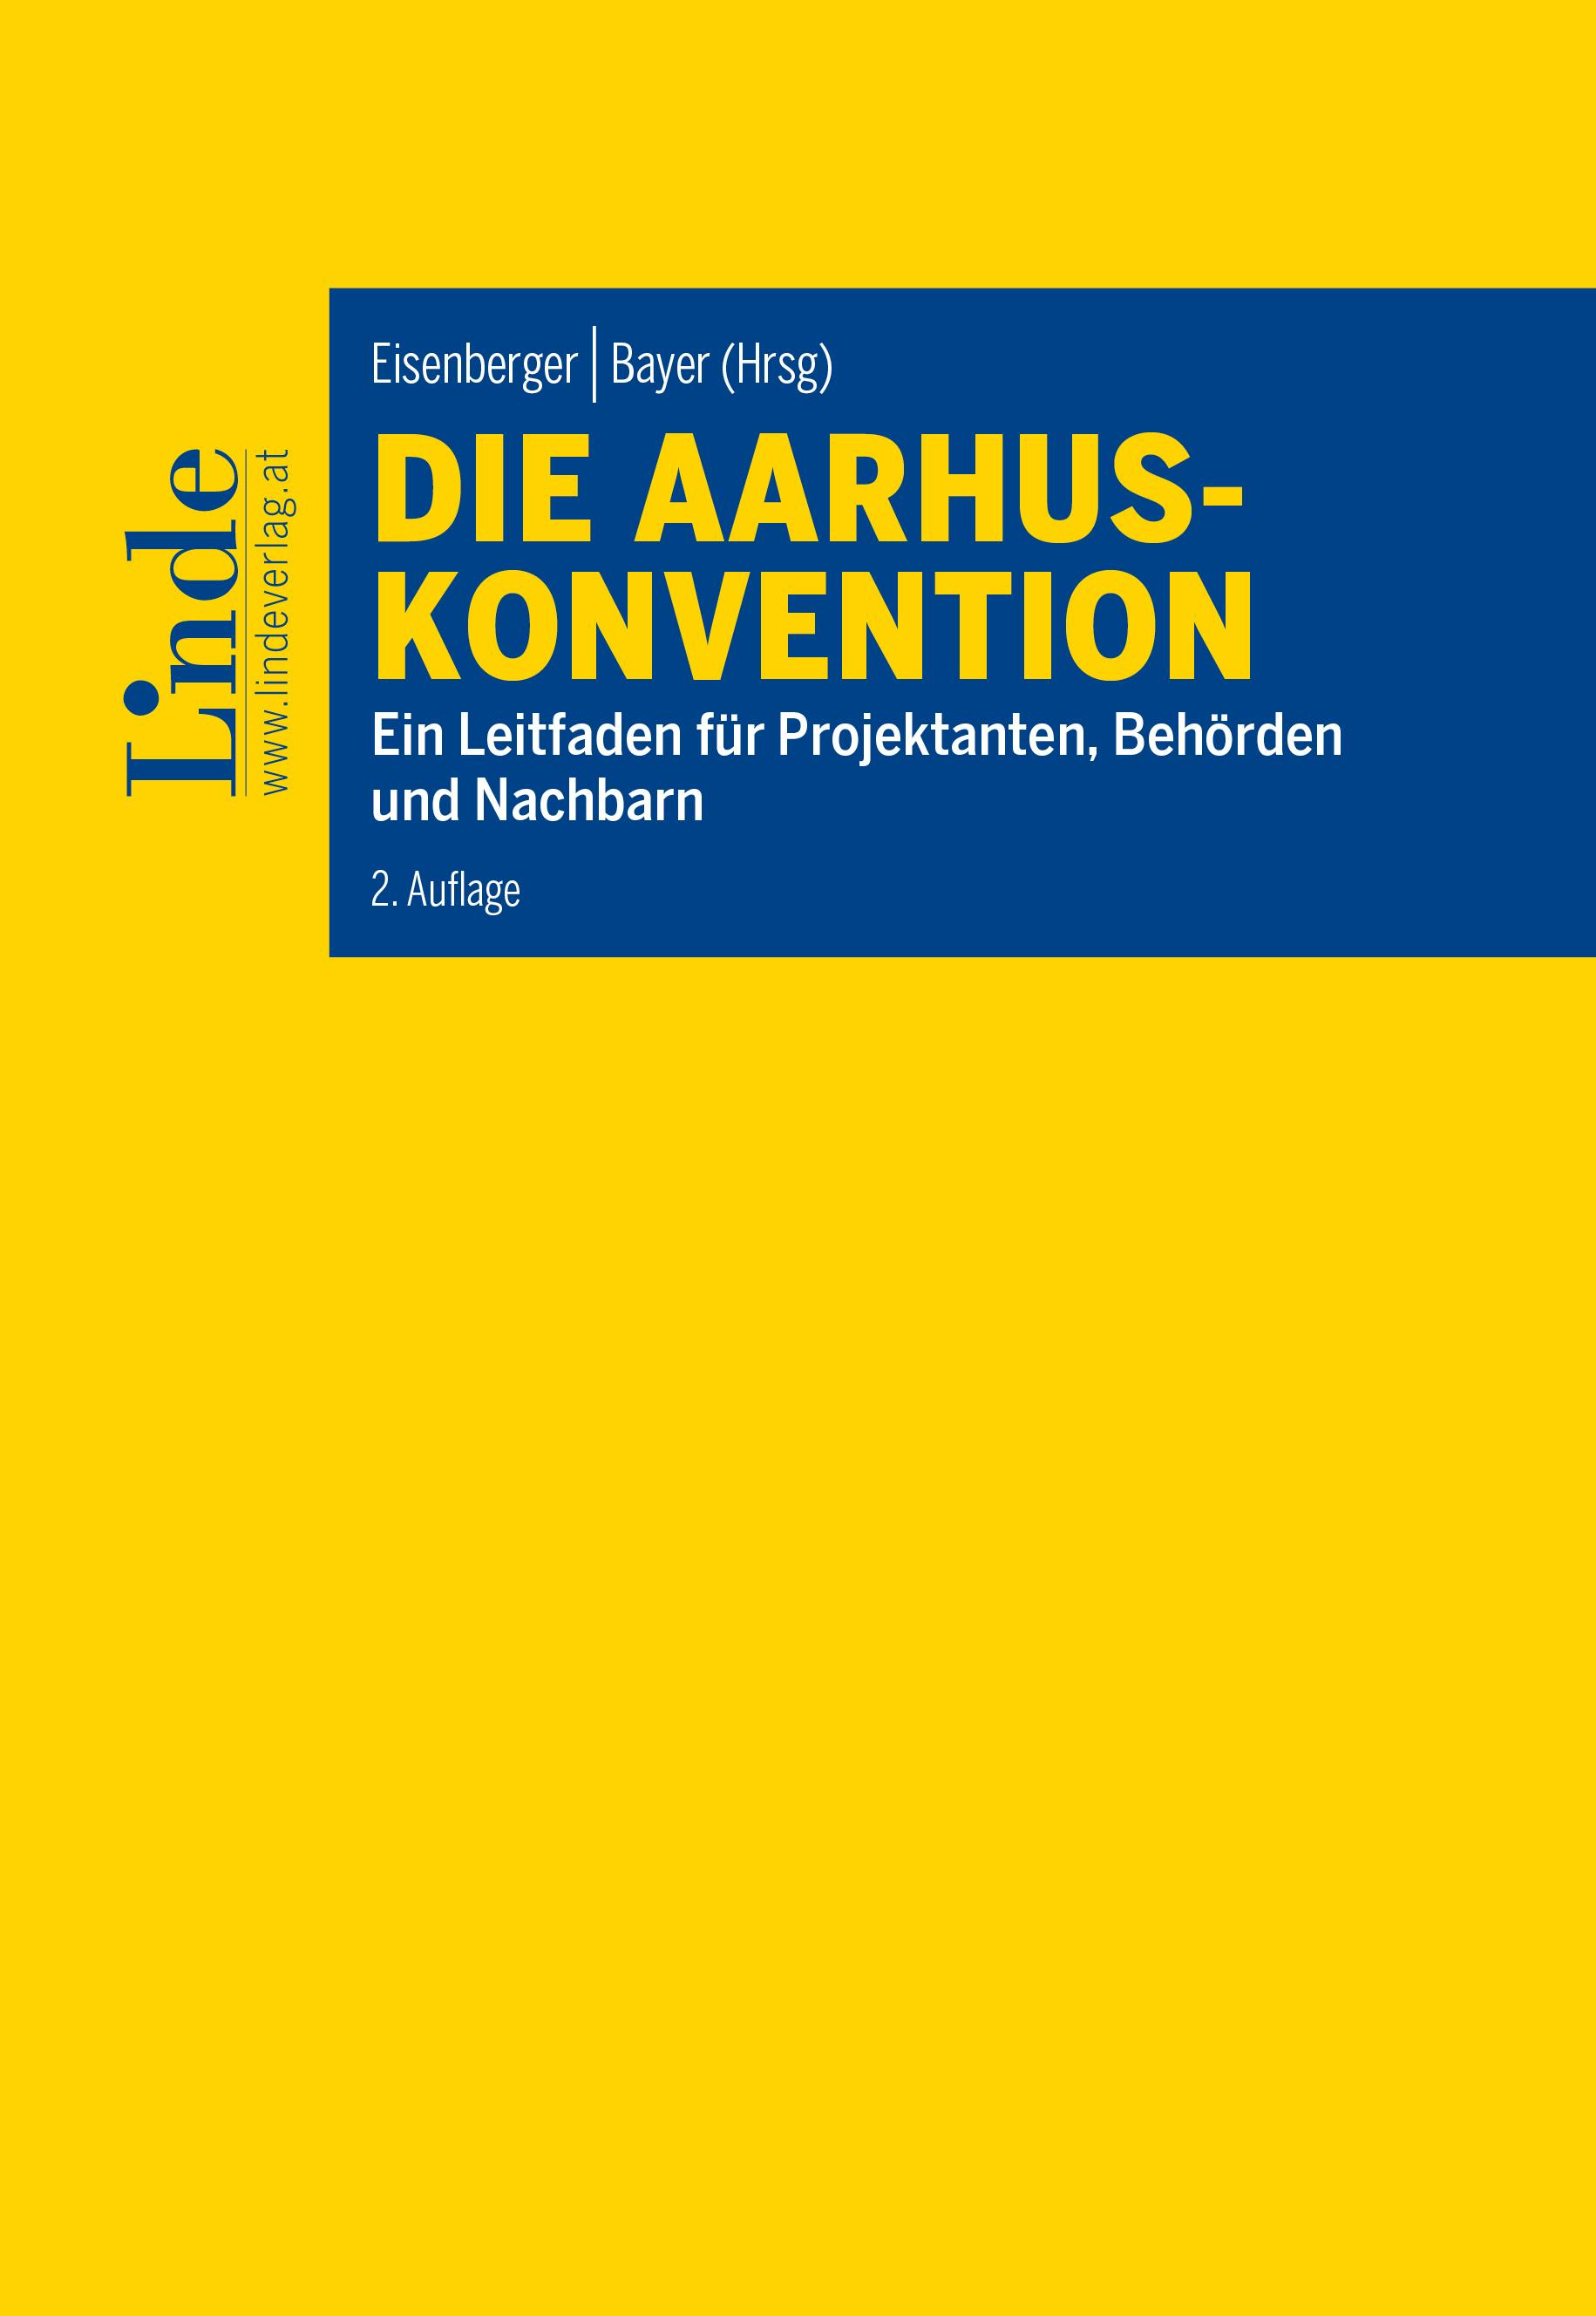 Eisenberger | Bayer (Hrsg.)
Die Aarhus-Konvention
Ein Leitfaden für Projektanten, Behörden und Nachbarn